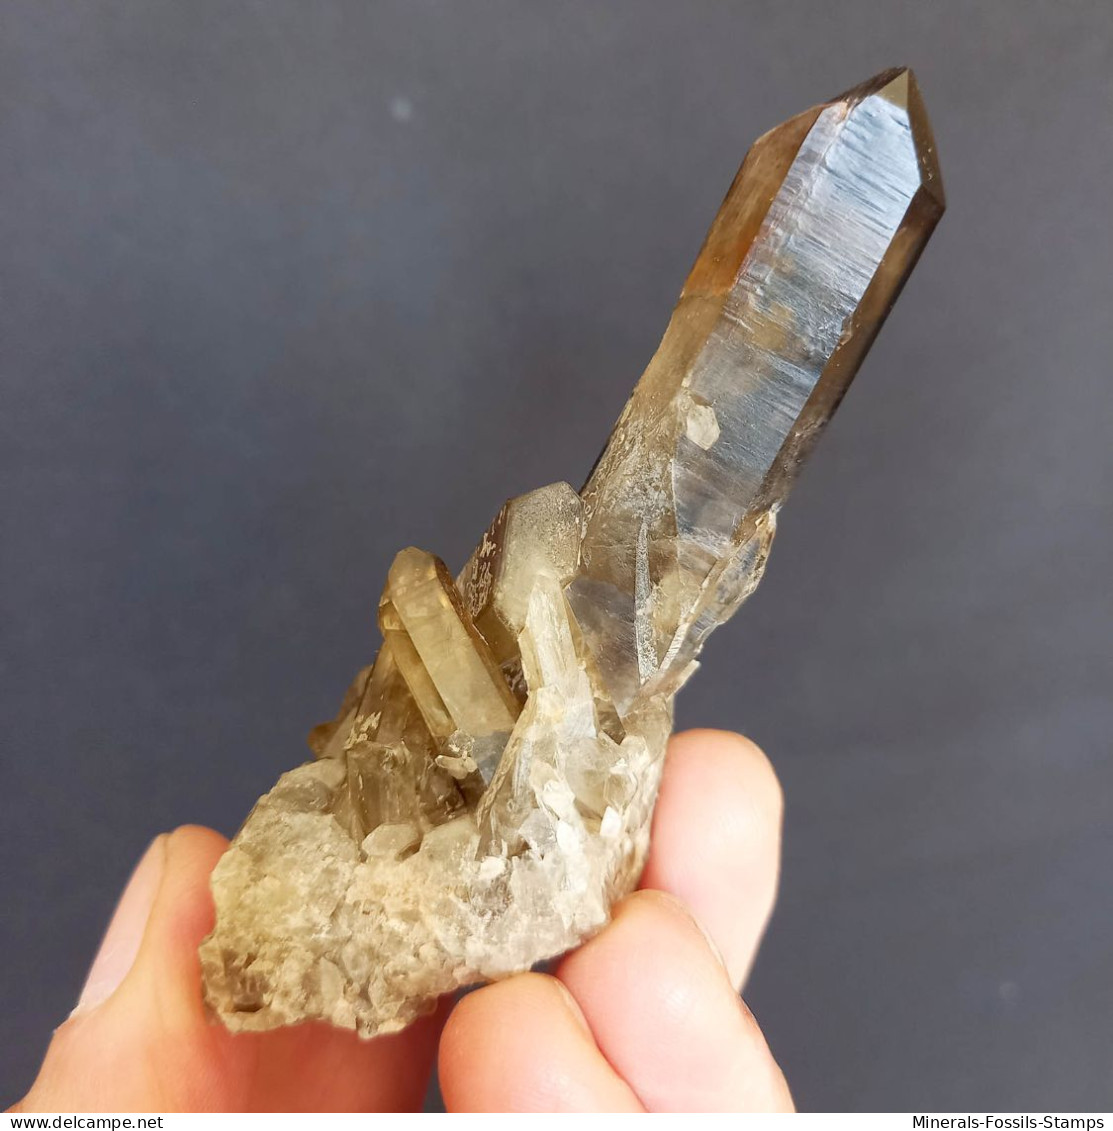 #01 – SCHÖNE MORIONE QUARZ Kristalle (Kara-Oba, Moiynkum, Jambyl, Kasachstan) - Mineralien